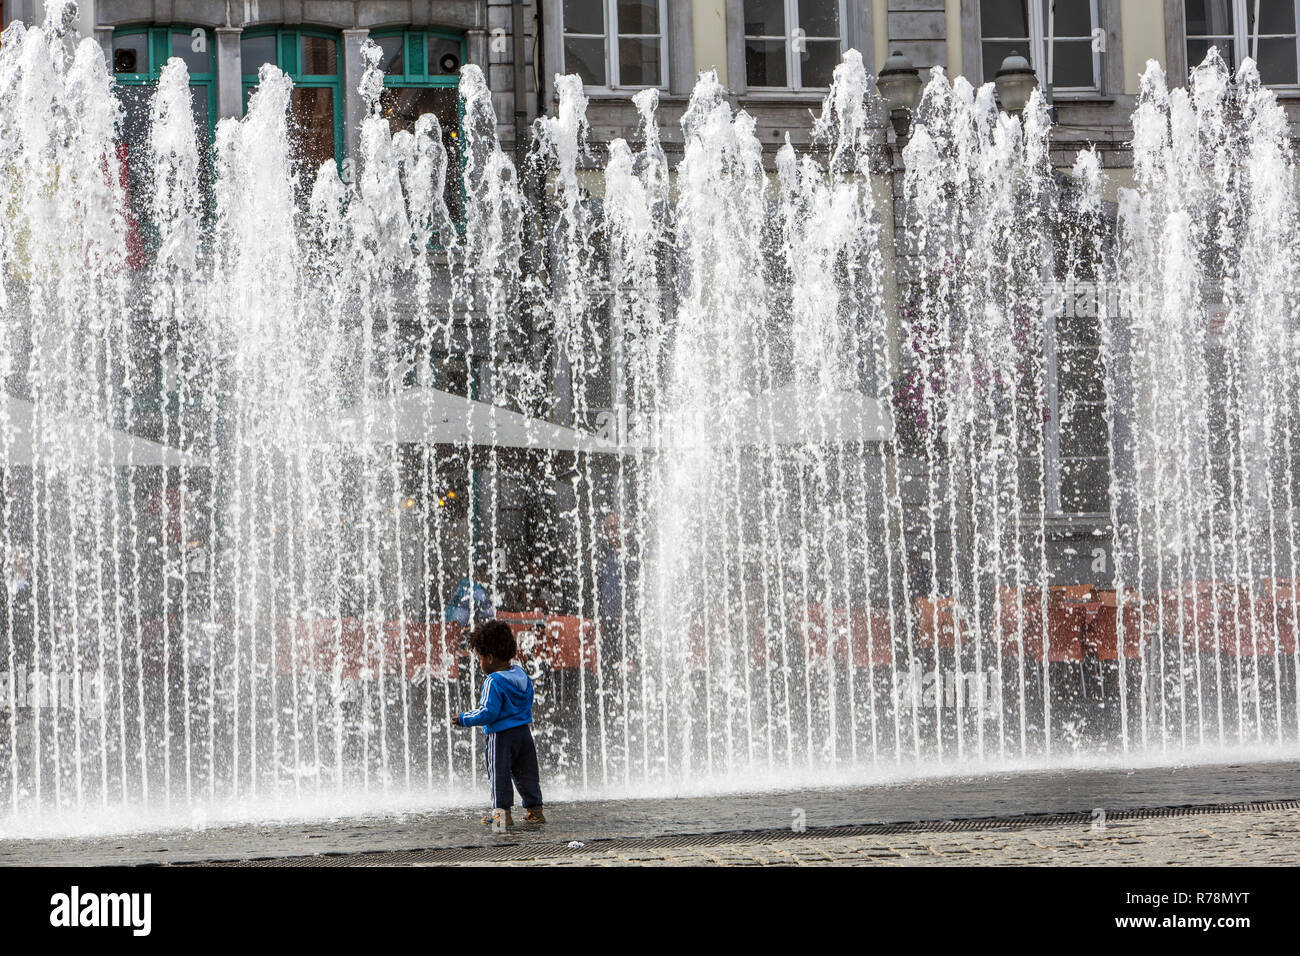 Caractéristiques de l'eau, fontaines, Grand Place, place centrale dans le centre historique, Mons, Hainaut, Belgique Banque D'Images